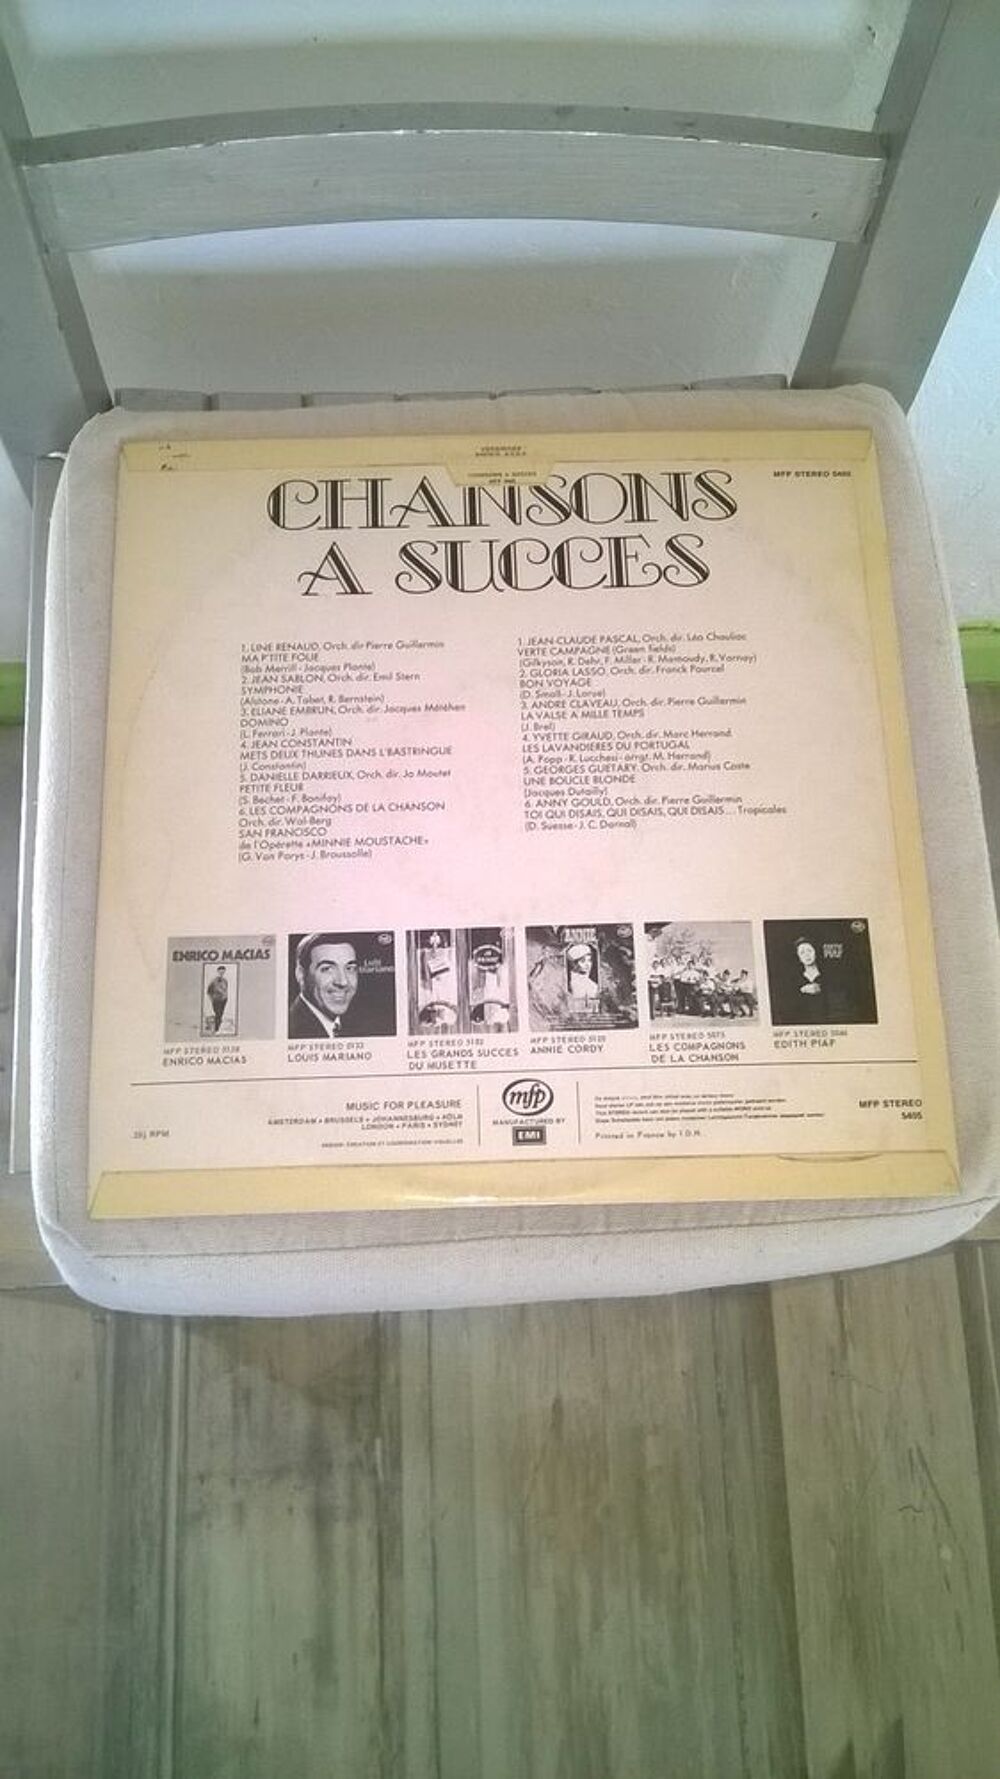 Vinyle Chansons A Succes
Excellent etat
Ma P'tite Folie-Li CD et vinyles